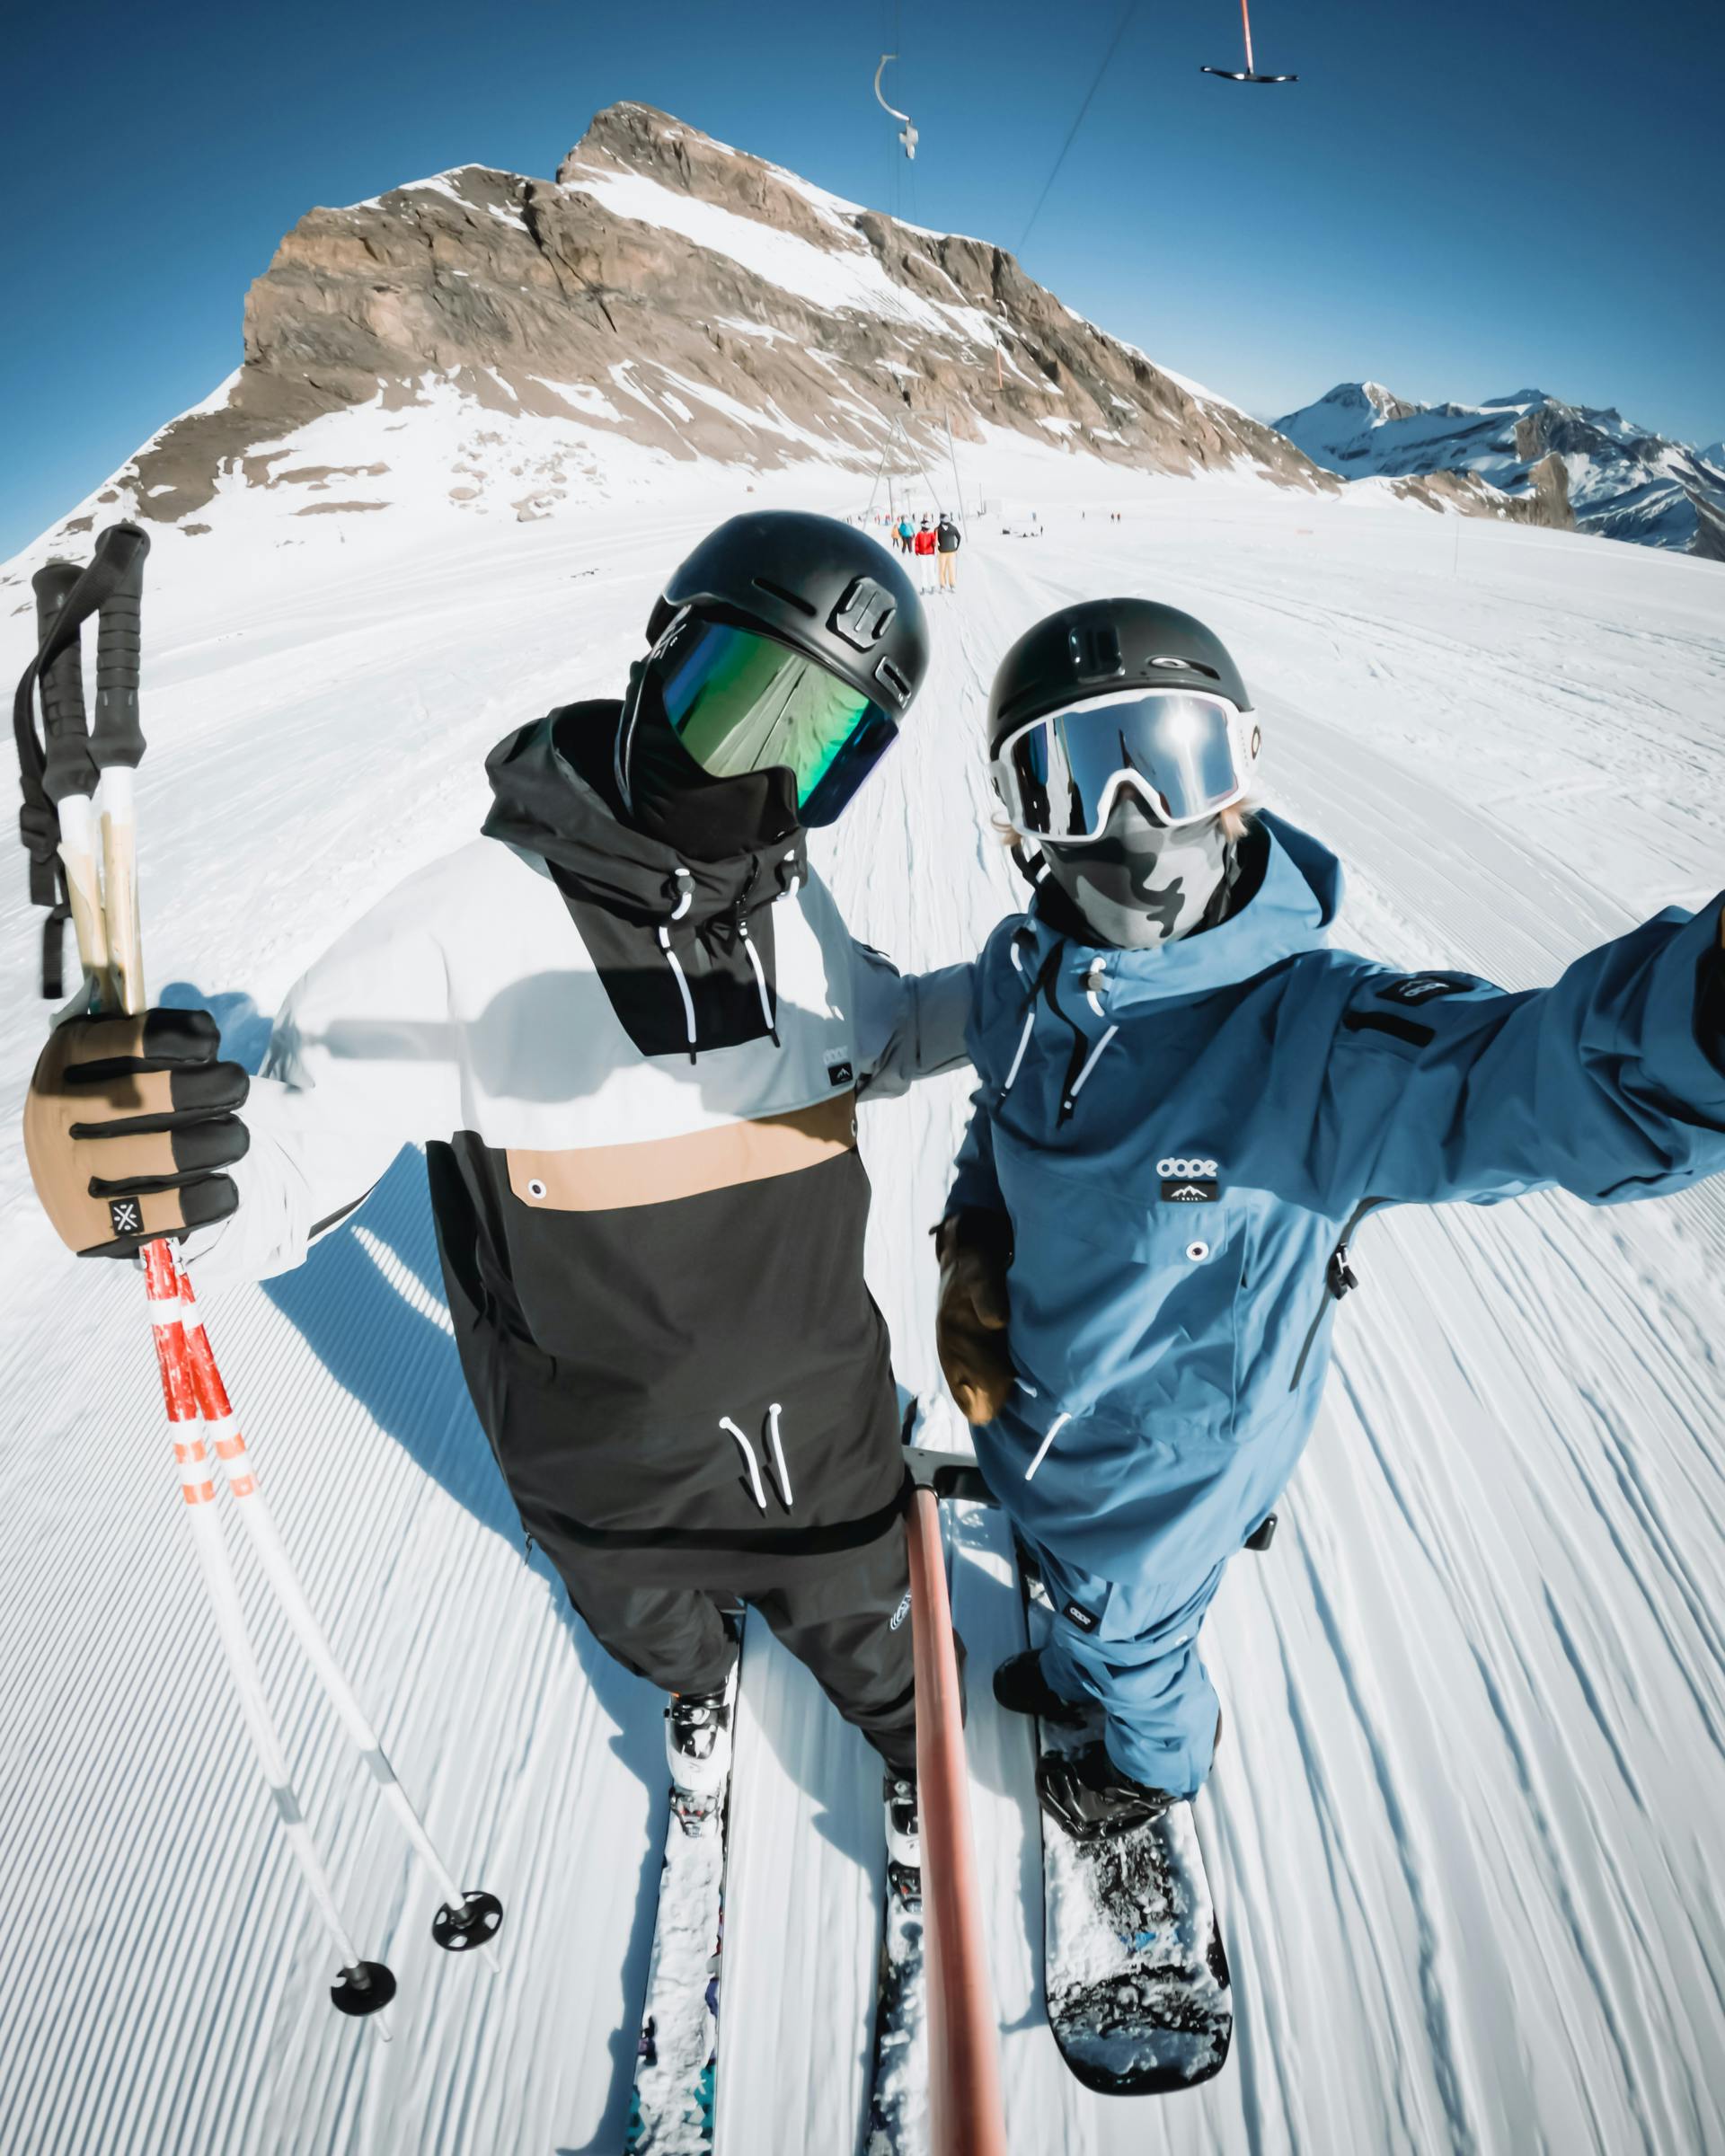 snow lifts ski vs snowboard